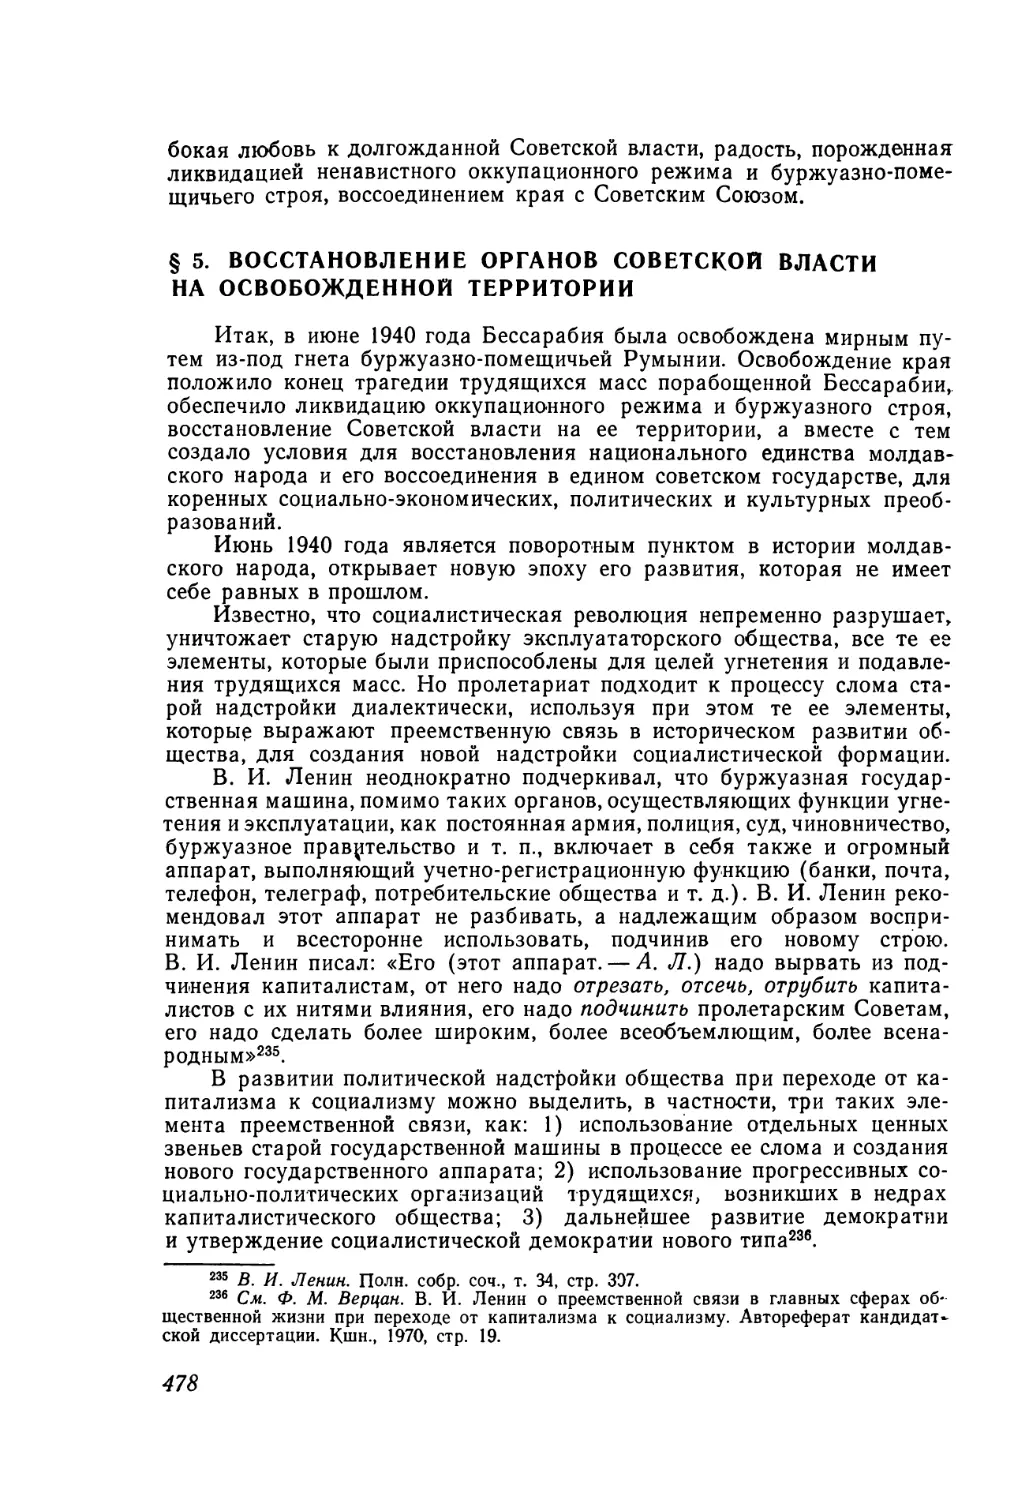 § 5. Восстановление органов Советской власти на освобожденной территории